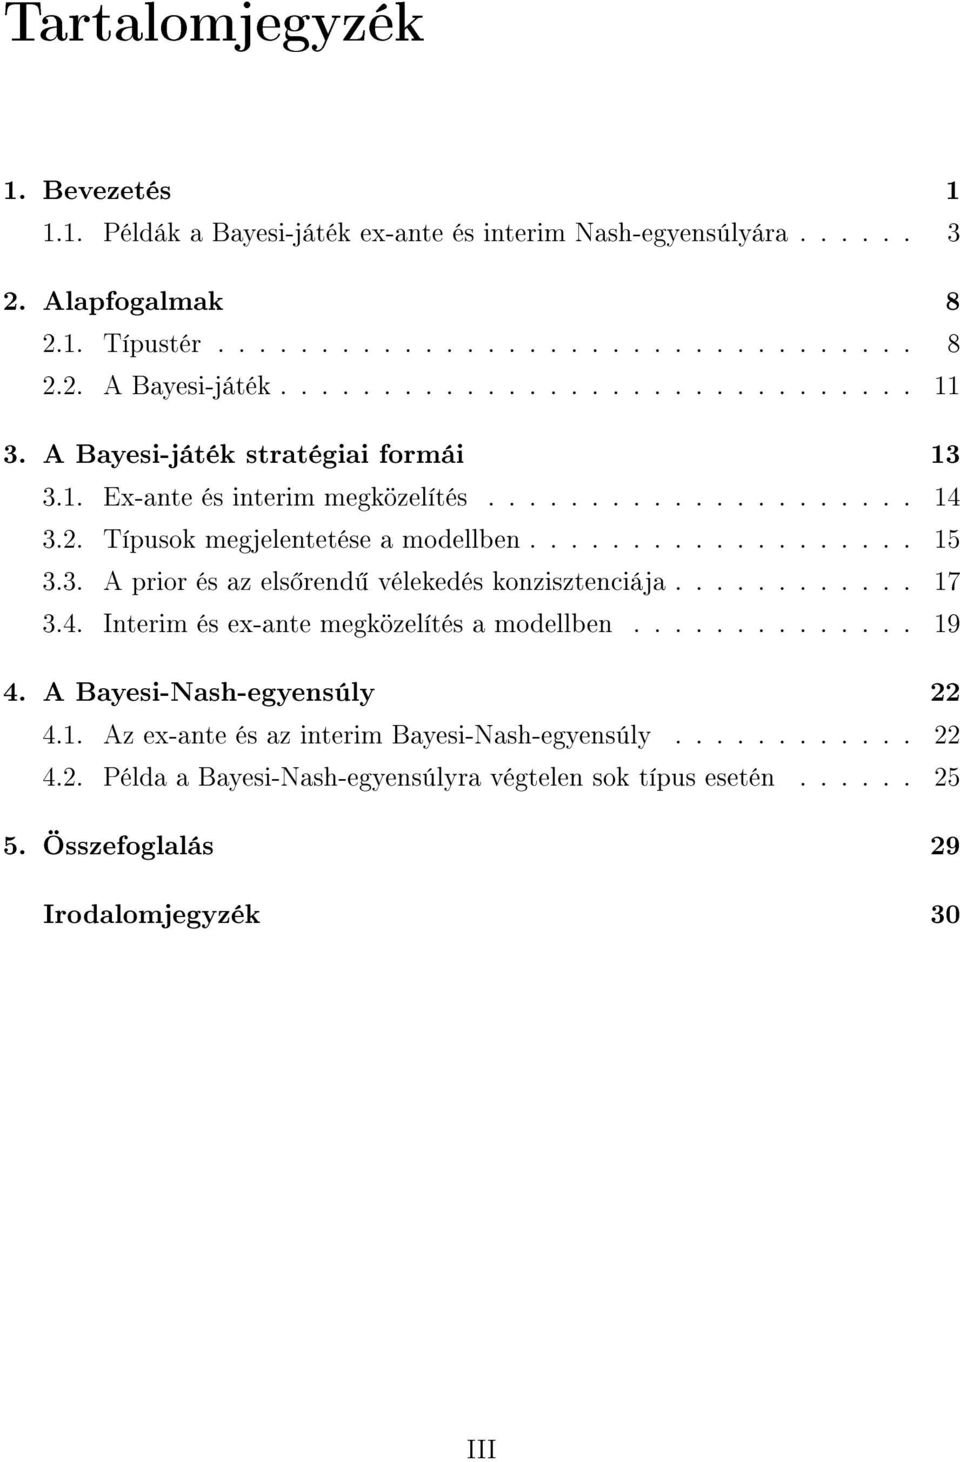 A Bayesi-játék Nash-egyensúlya - PDF Ingyenes letöltés